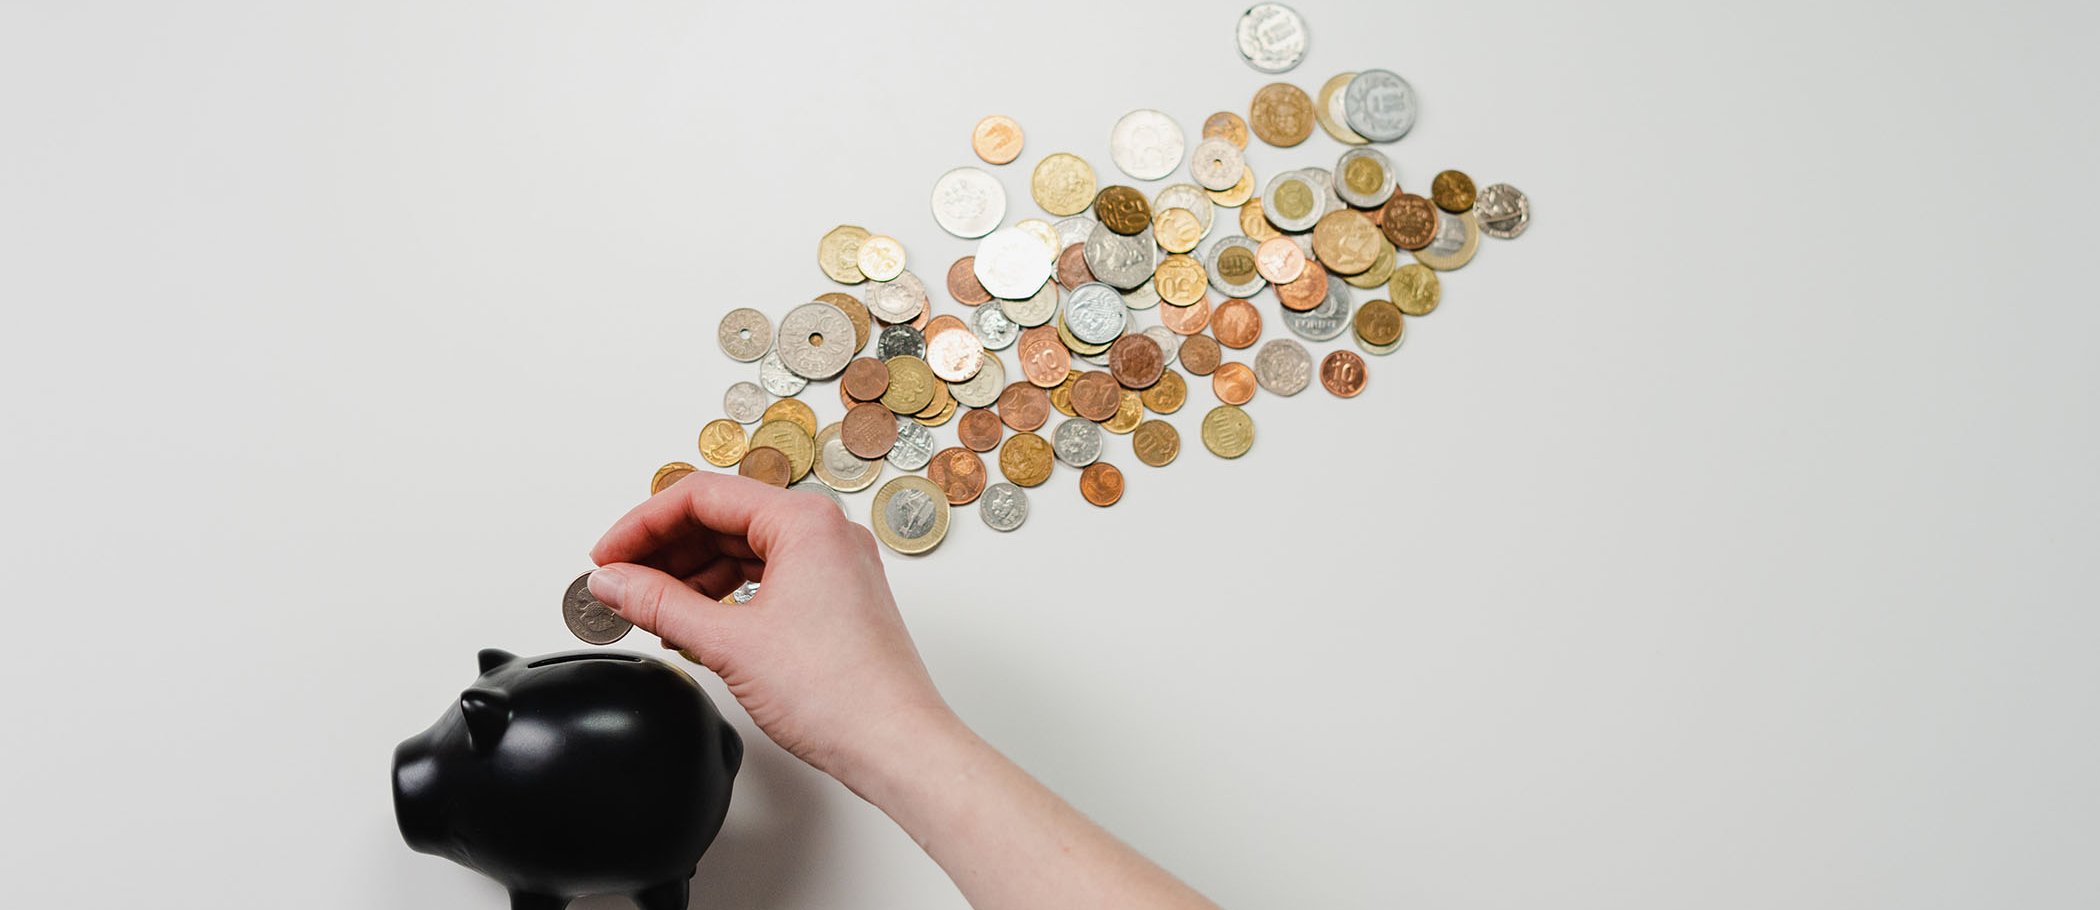 Una persona metiendo una moneda en una hucha, con más monedas sobre la mesa